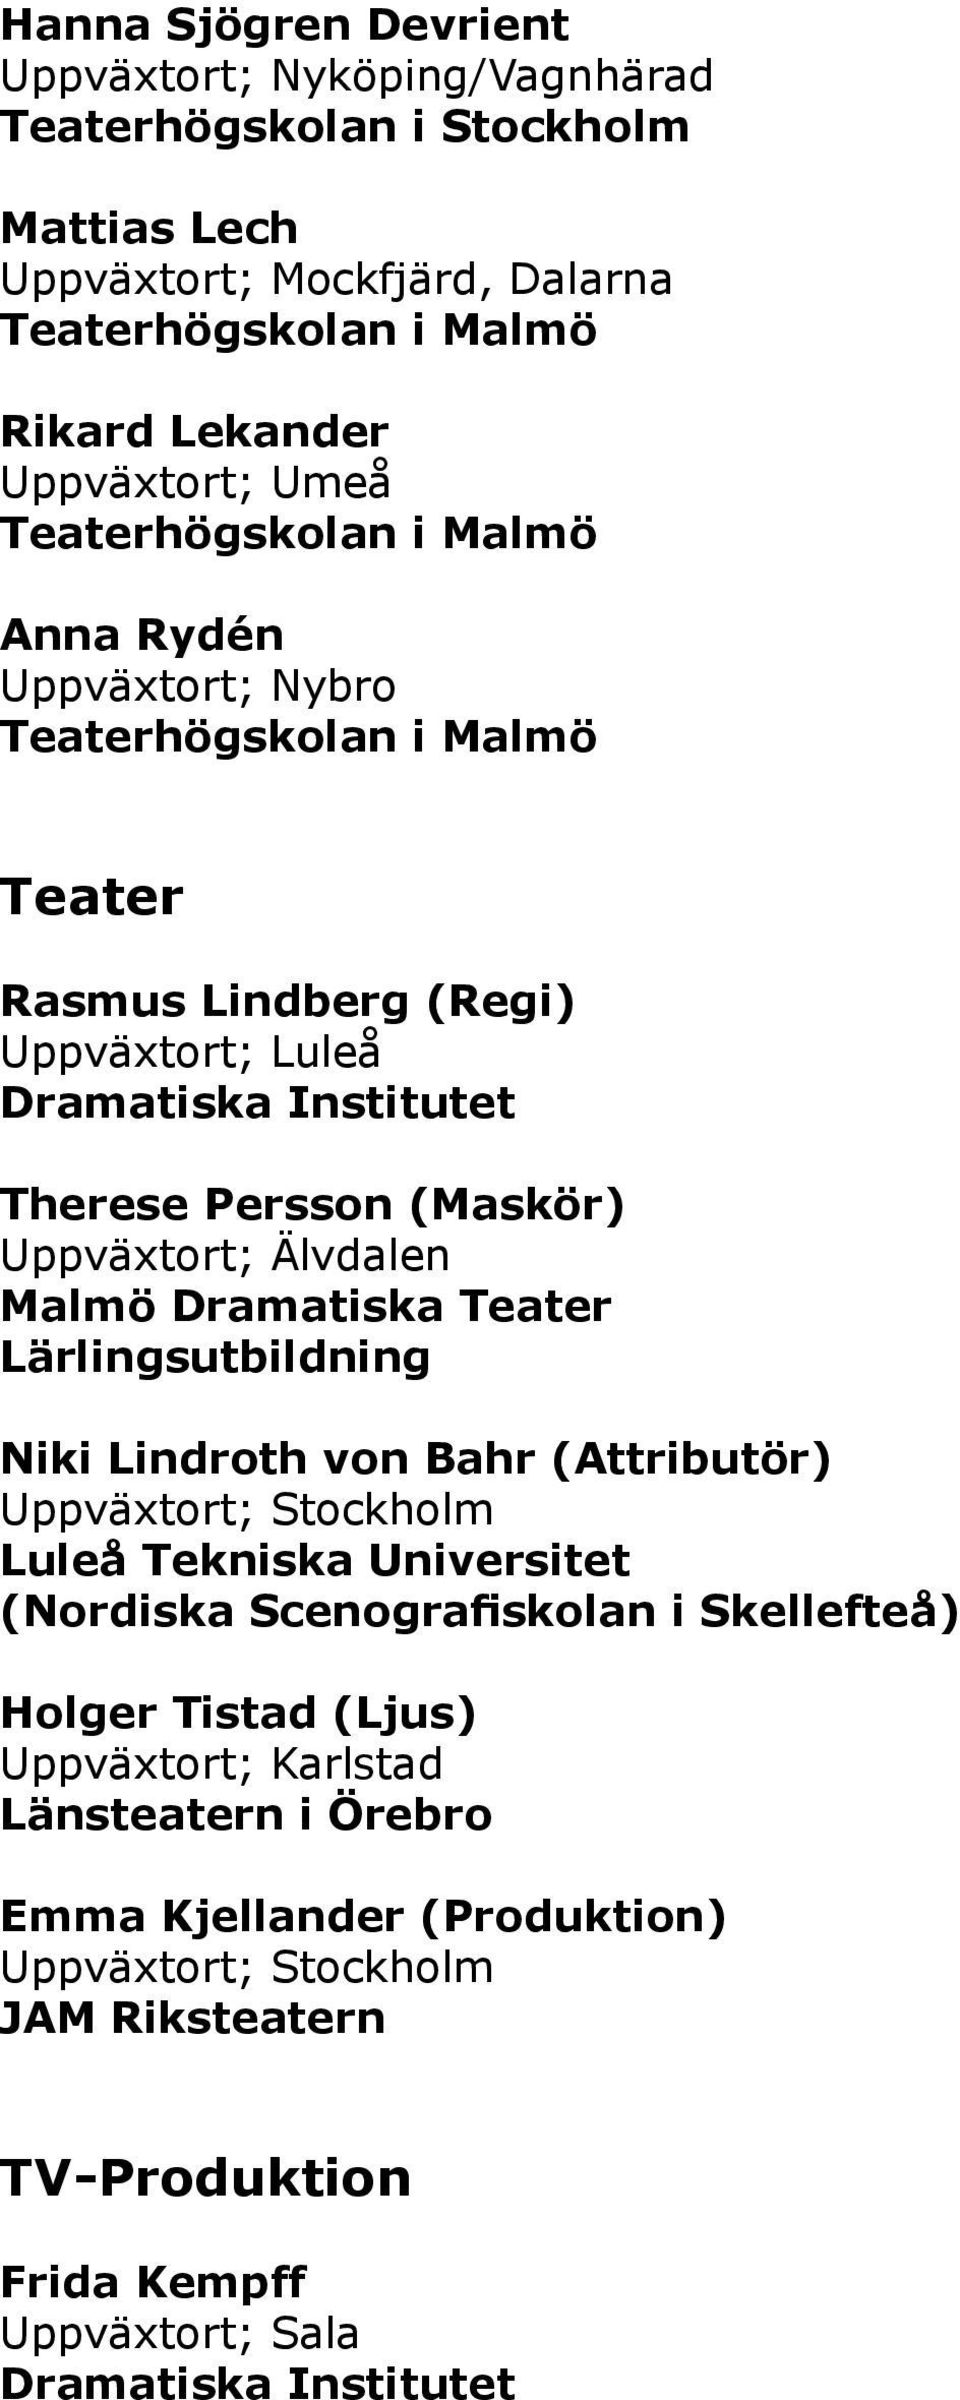 Uppväxtort; Älvdalen Malmö Dramatiska Teater Lärlingsutbildning Niki Lindroth von Bahr (Attributör) Luleå Tekniska Universitet (Nordiska